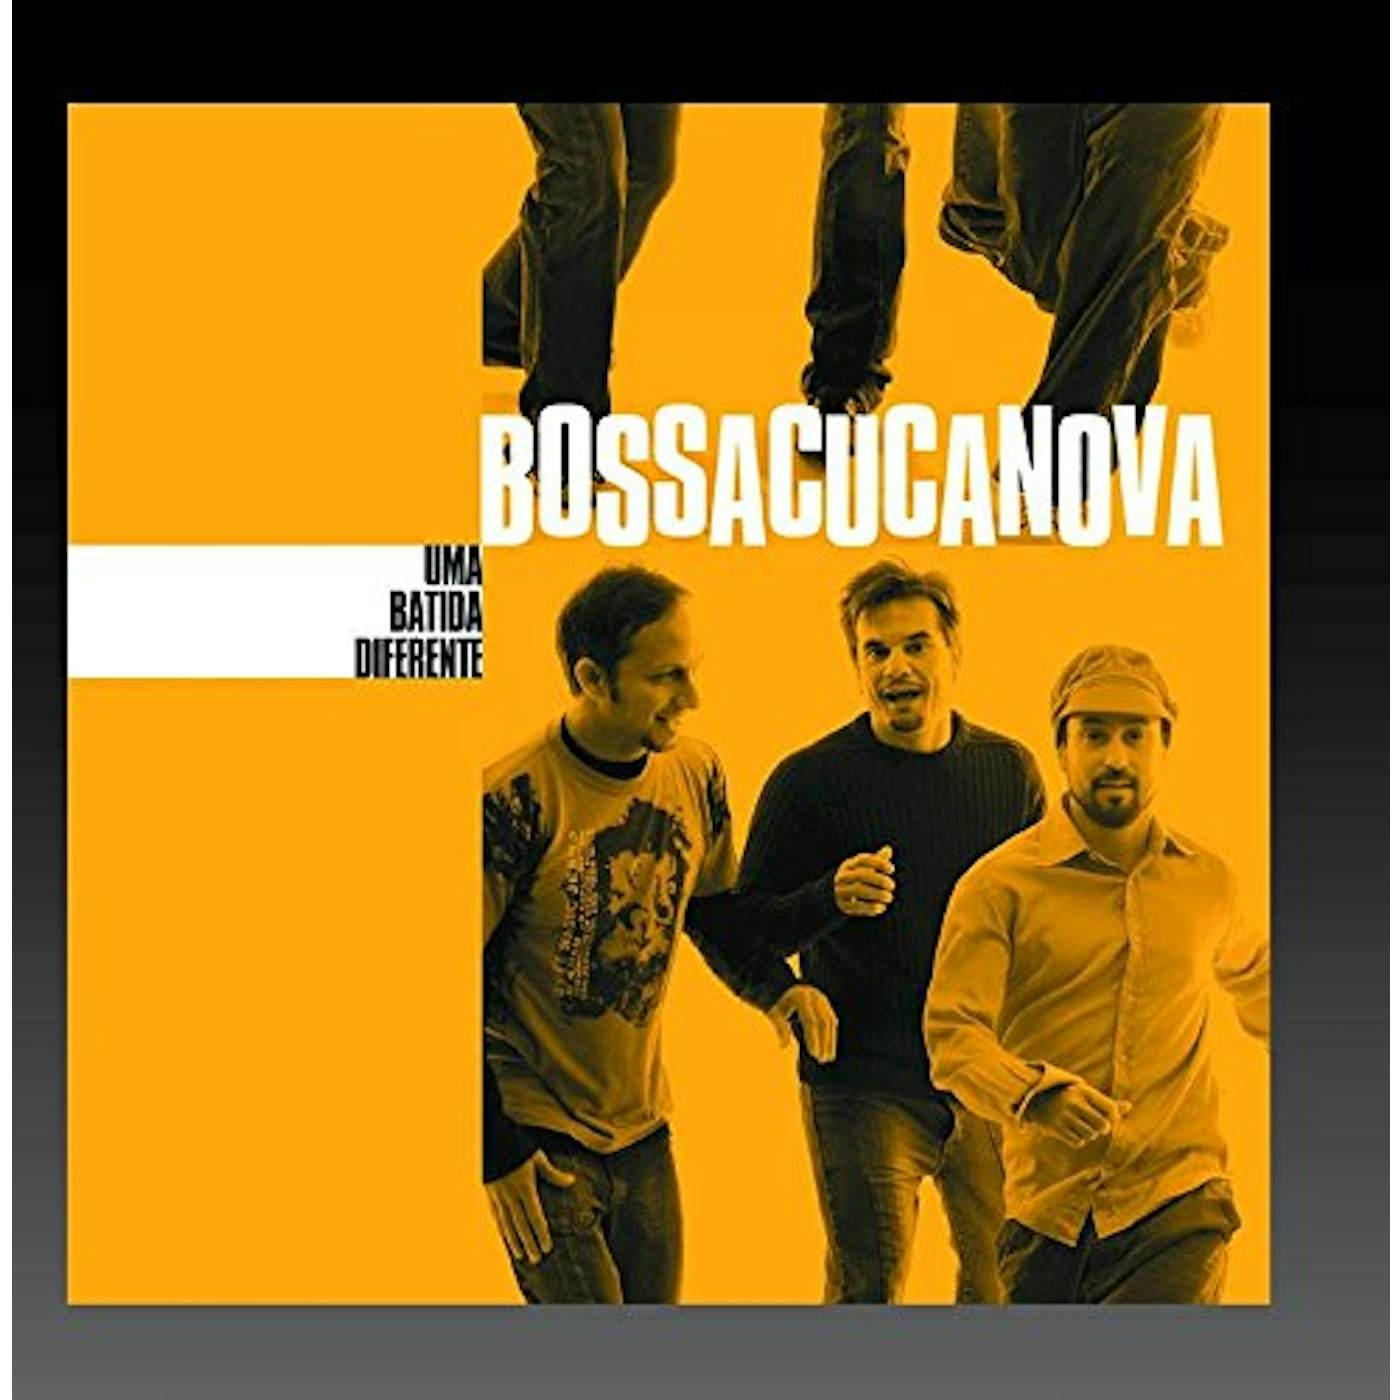 Bossacucanova UMA BATIDA DIFERENTE CD